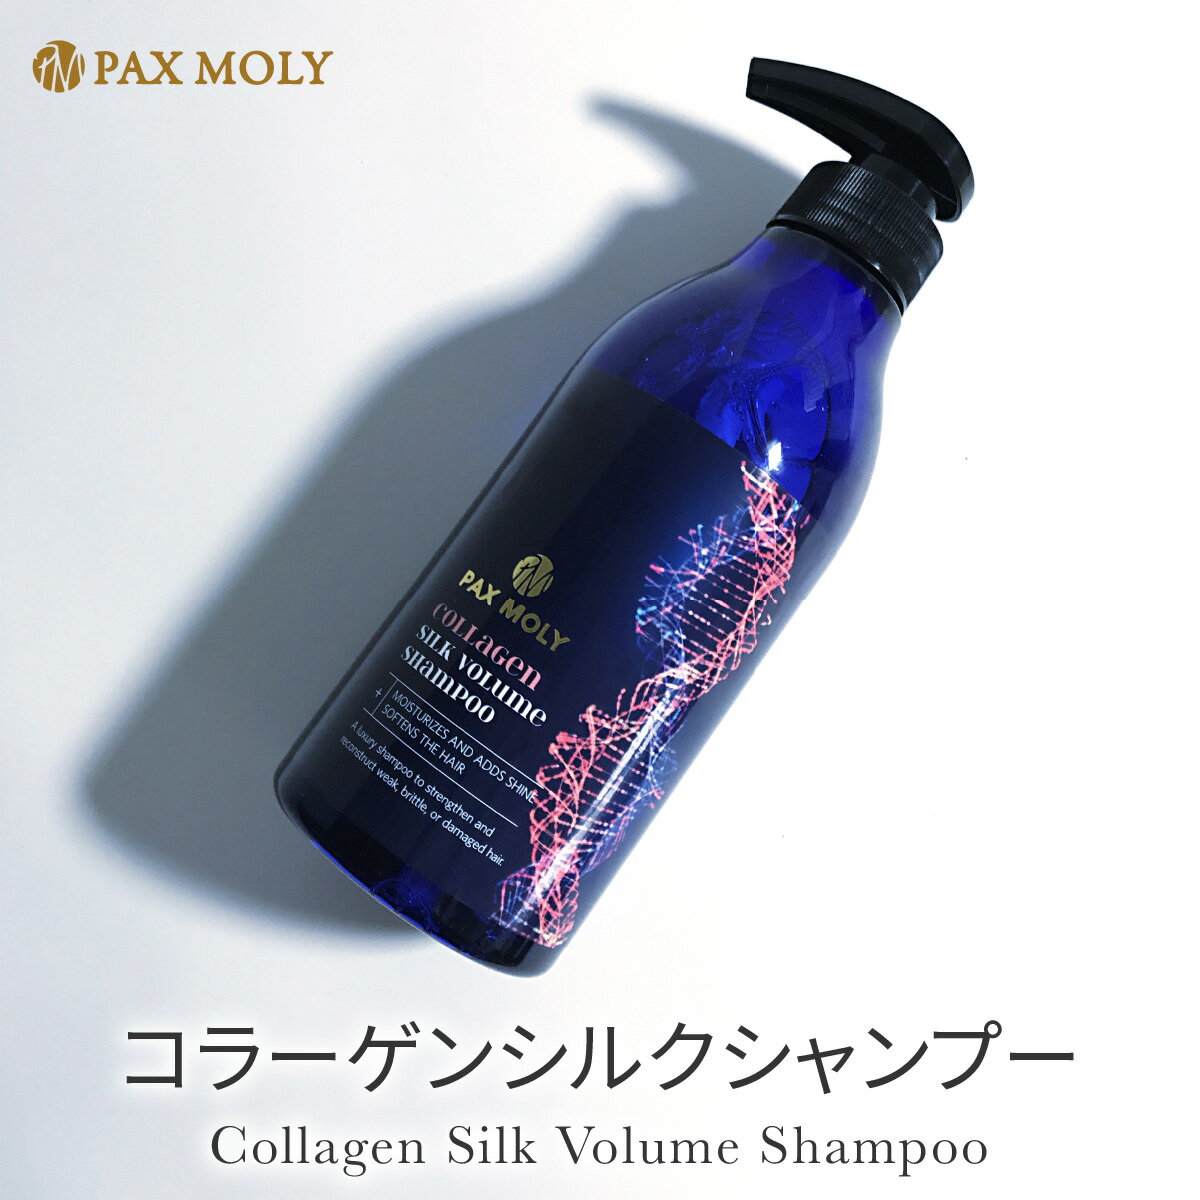 PAX MOLY シャンプー コラーゲンシルクシャンプー 韓国 コスメ コラーゲン 韓国製 paxmoly-shamp